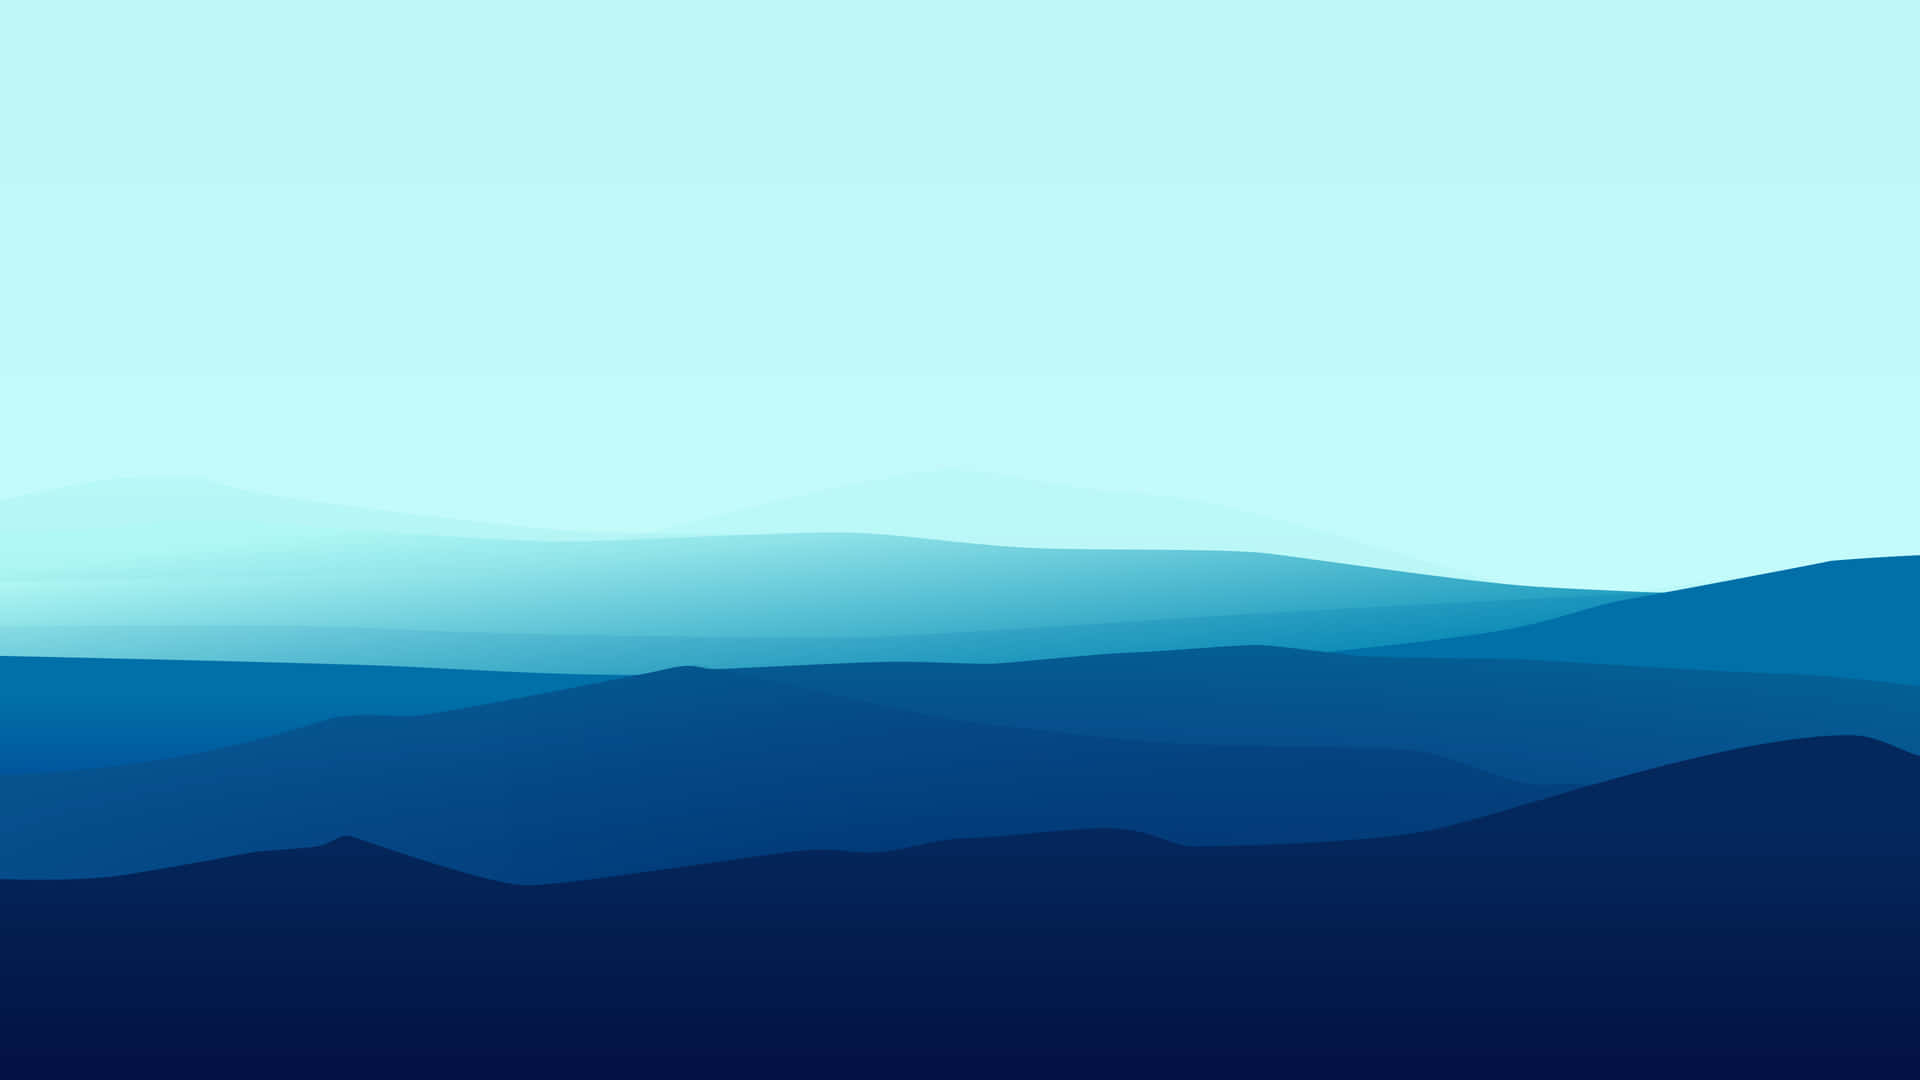 Einbild Von Einem Minimalistischen Berg Mit Beruhigenden Blauen Nuancen. Wallpaper